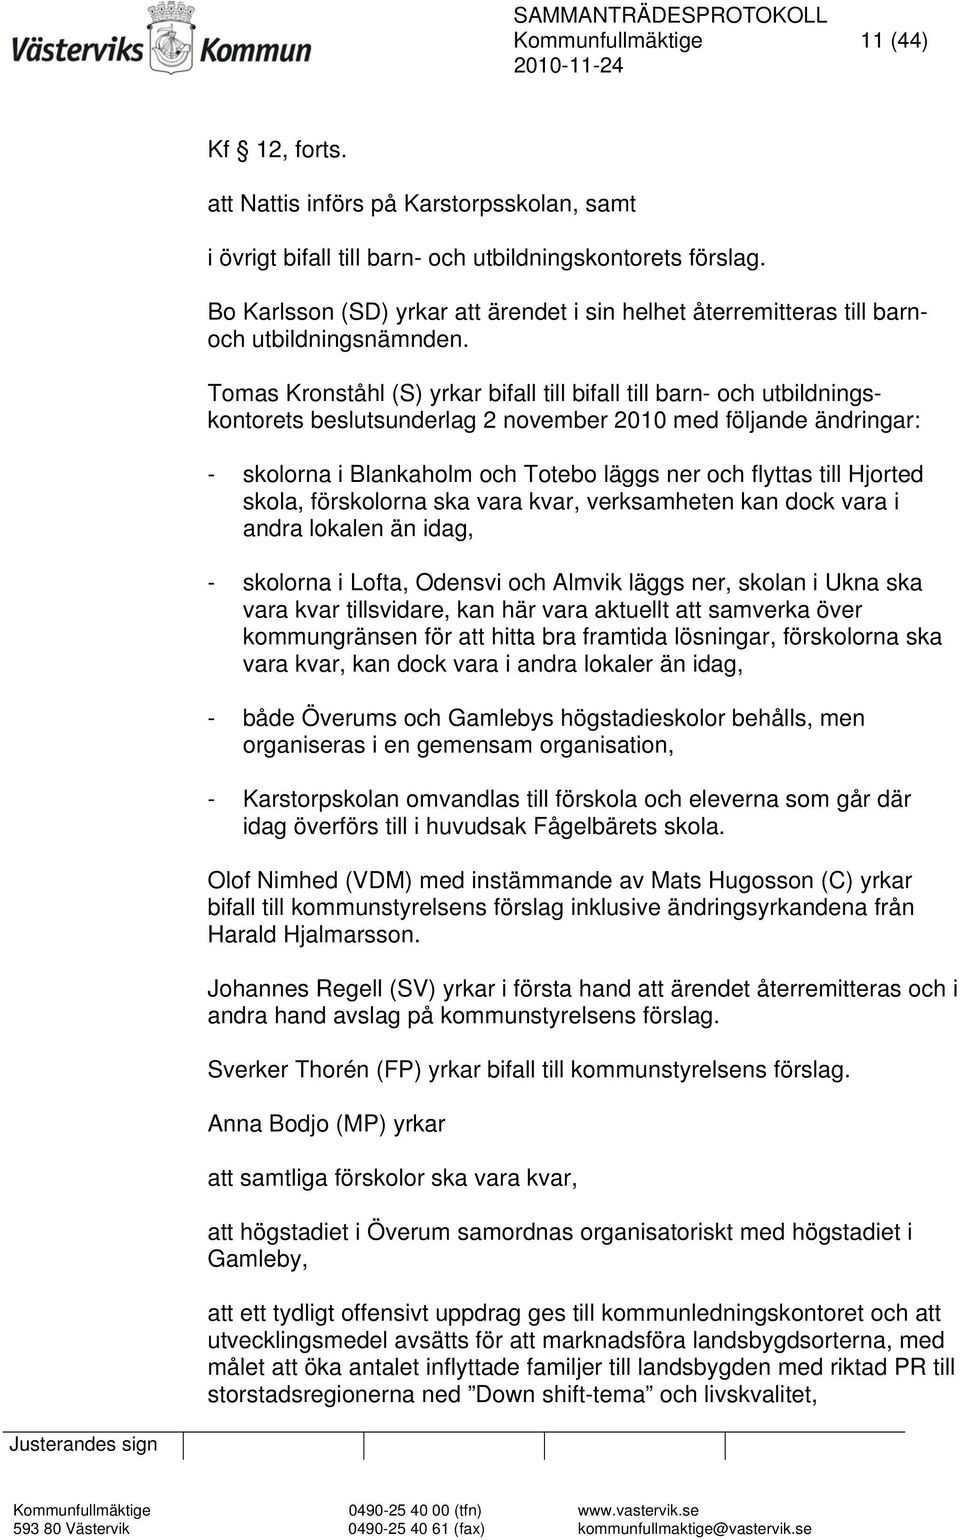 Tomas Kronståhl (S) yrkar bifall till bifall till barn- och utbildningskontorets beslutsunderlag 2 november 2010 med följande ändringar: - skolorna i Blankaholm och Totebo läggs ner och flyttas till